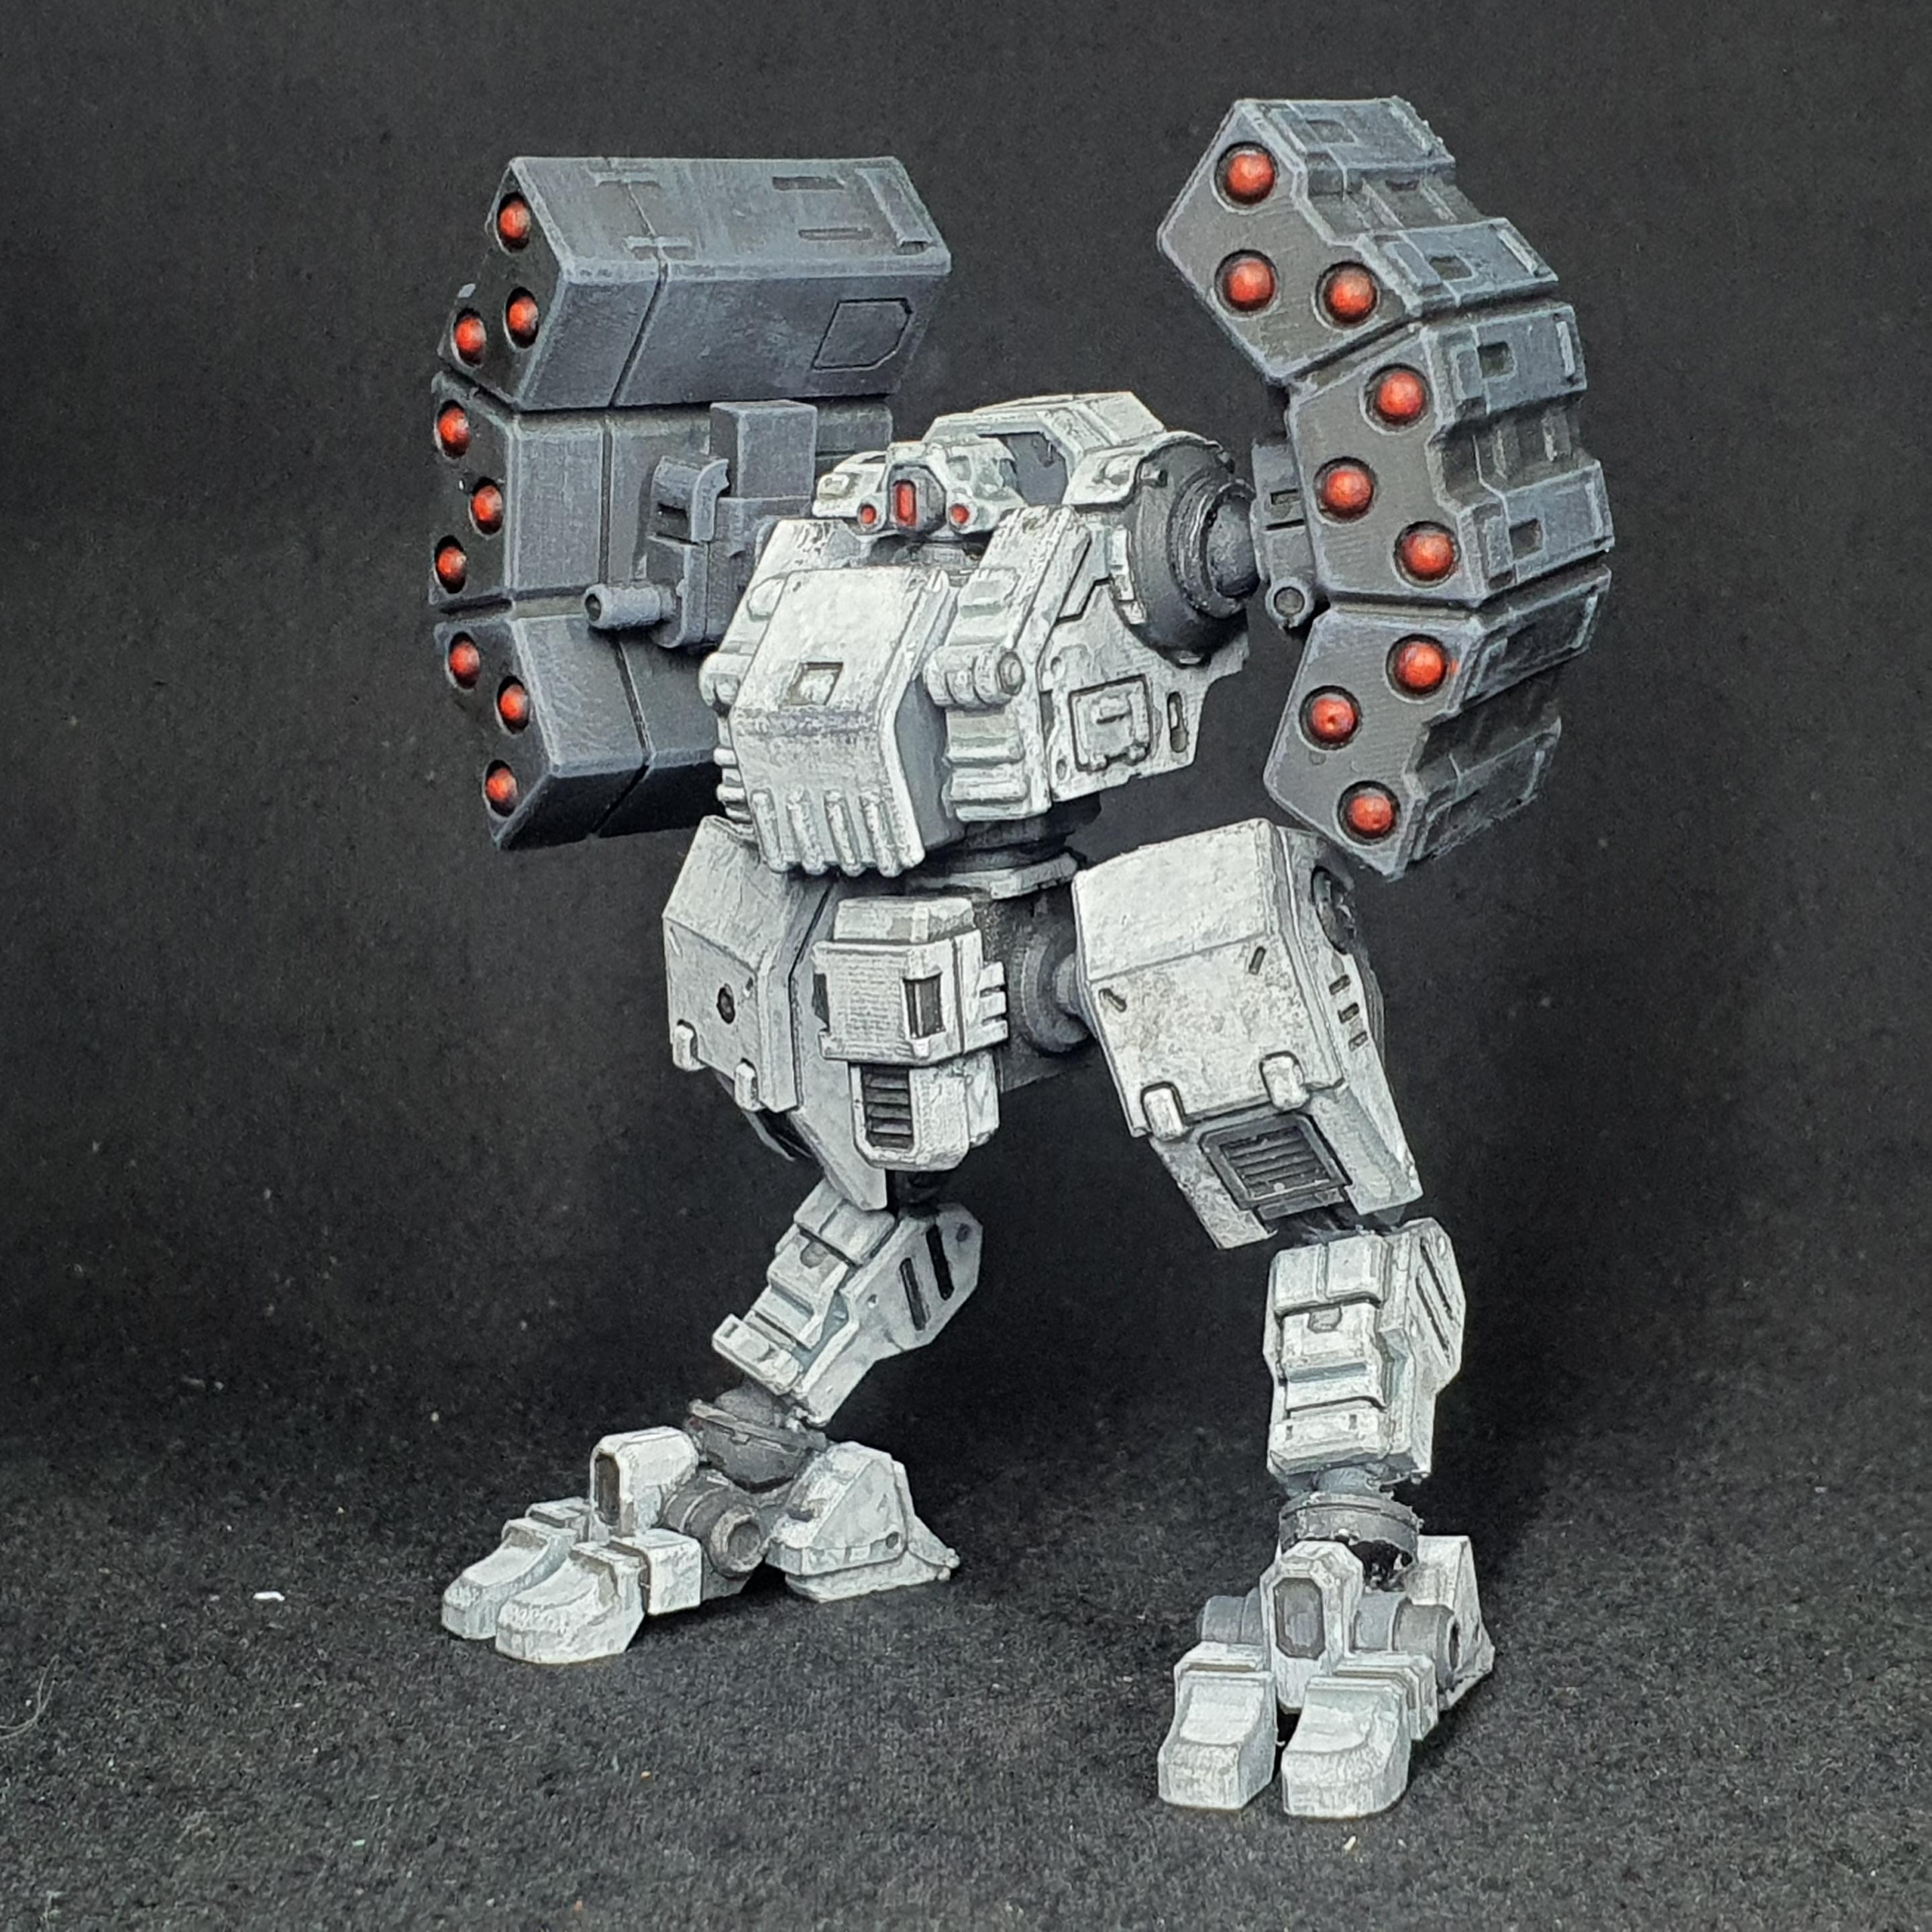 1/100 scale EISENFRONT "SHAMROCK" War-mech resin model kit